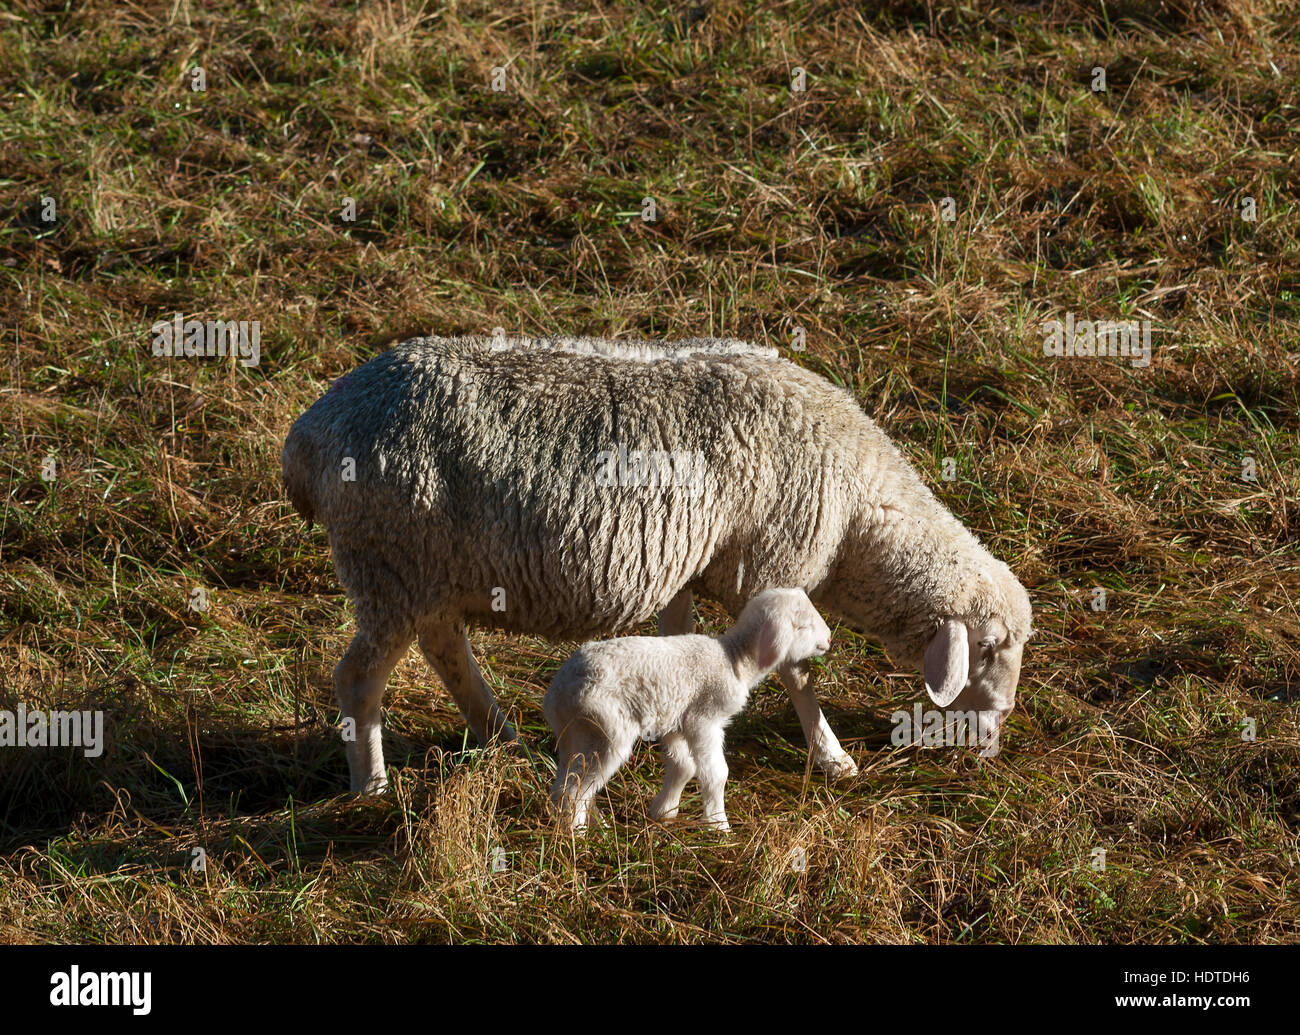 Ovejas domésticas (Ovis aries), oveja con cordero recién nacido en la pradera, Egloffstein, Superior Franconia, Baviera, Alemania Foto de stock